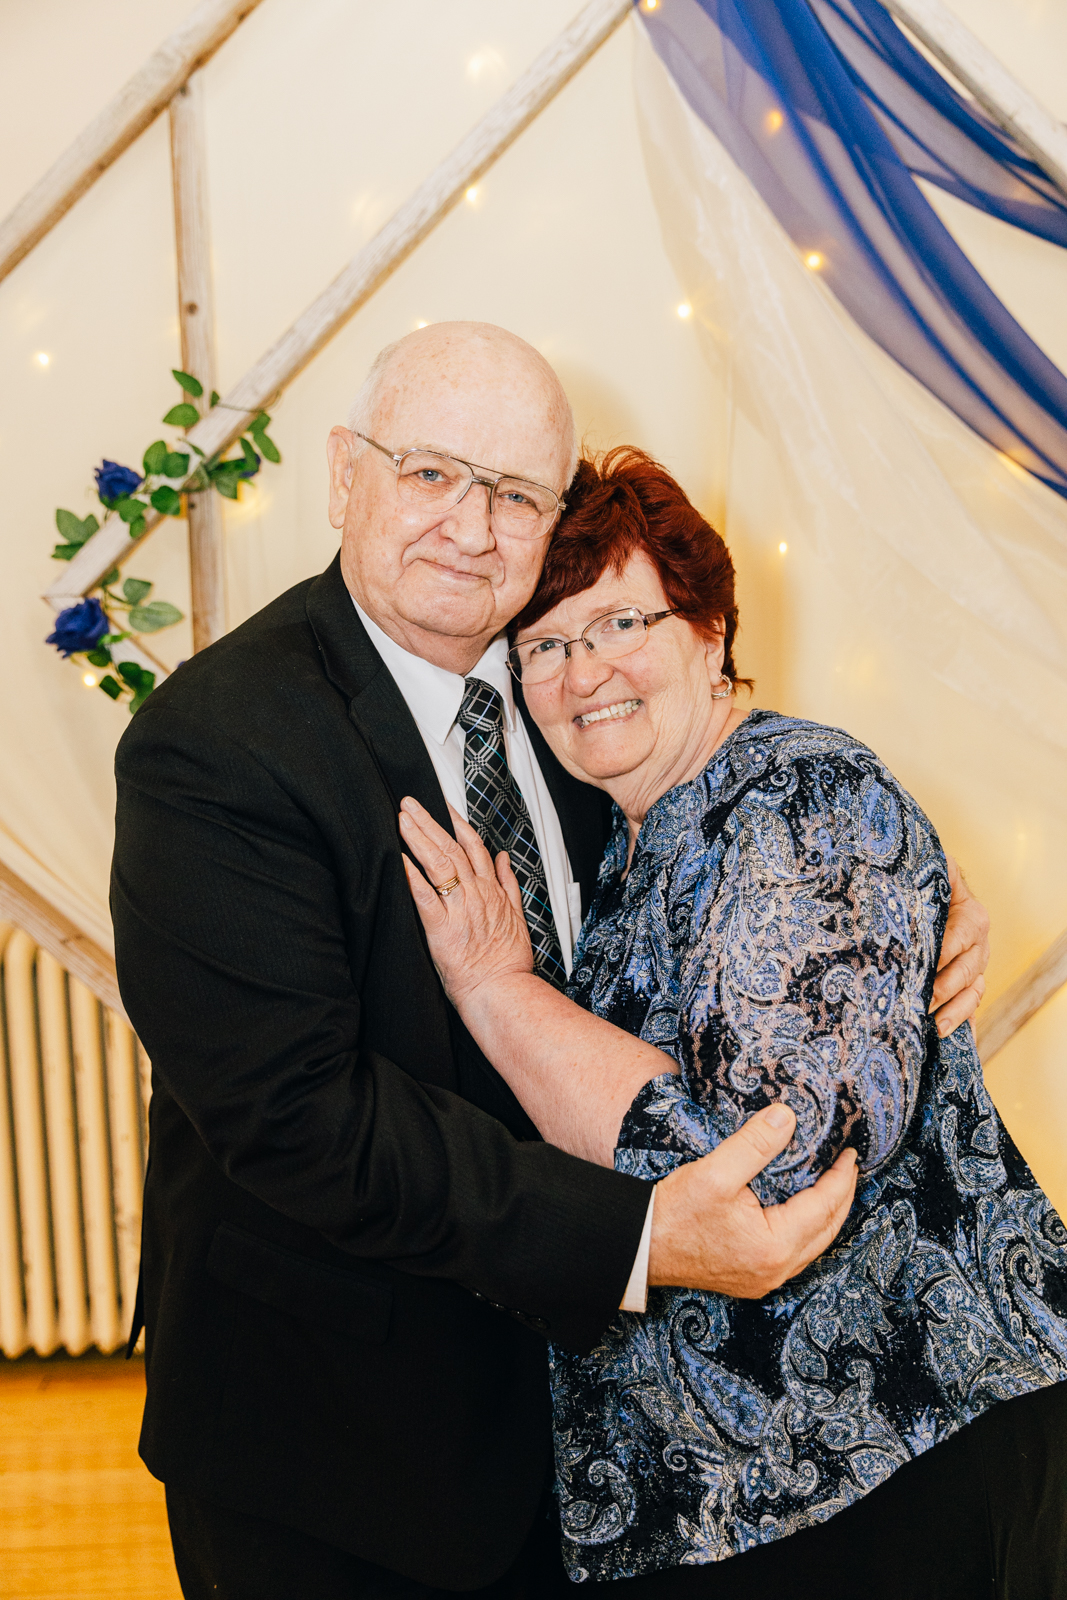 Jackson Hole wedding photographers capture Grandparents at weddings